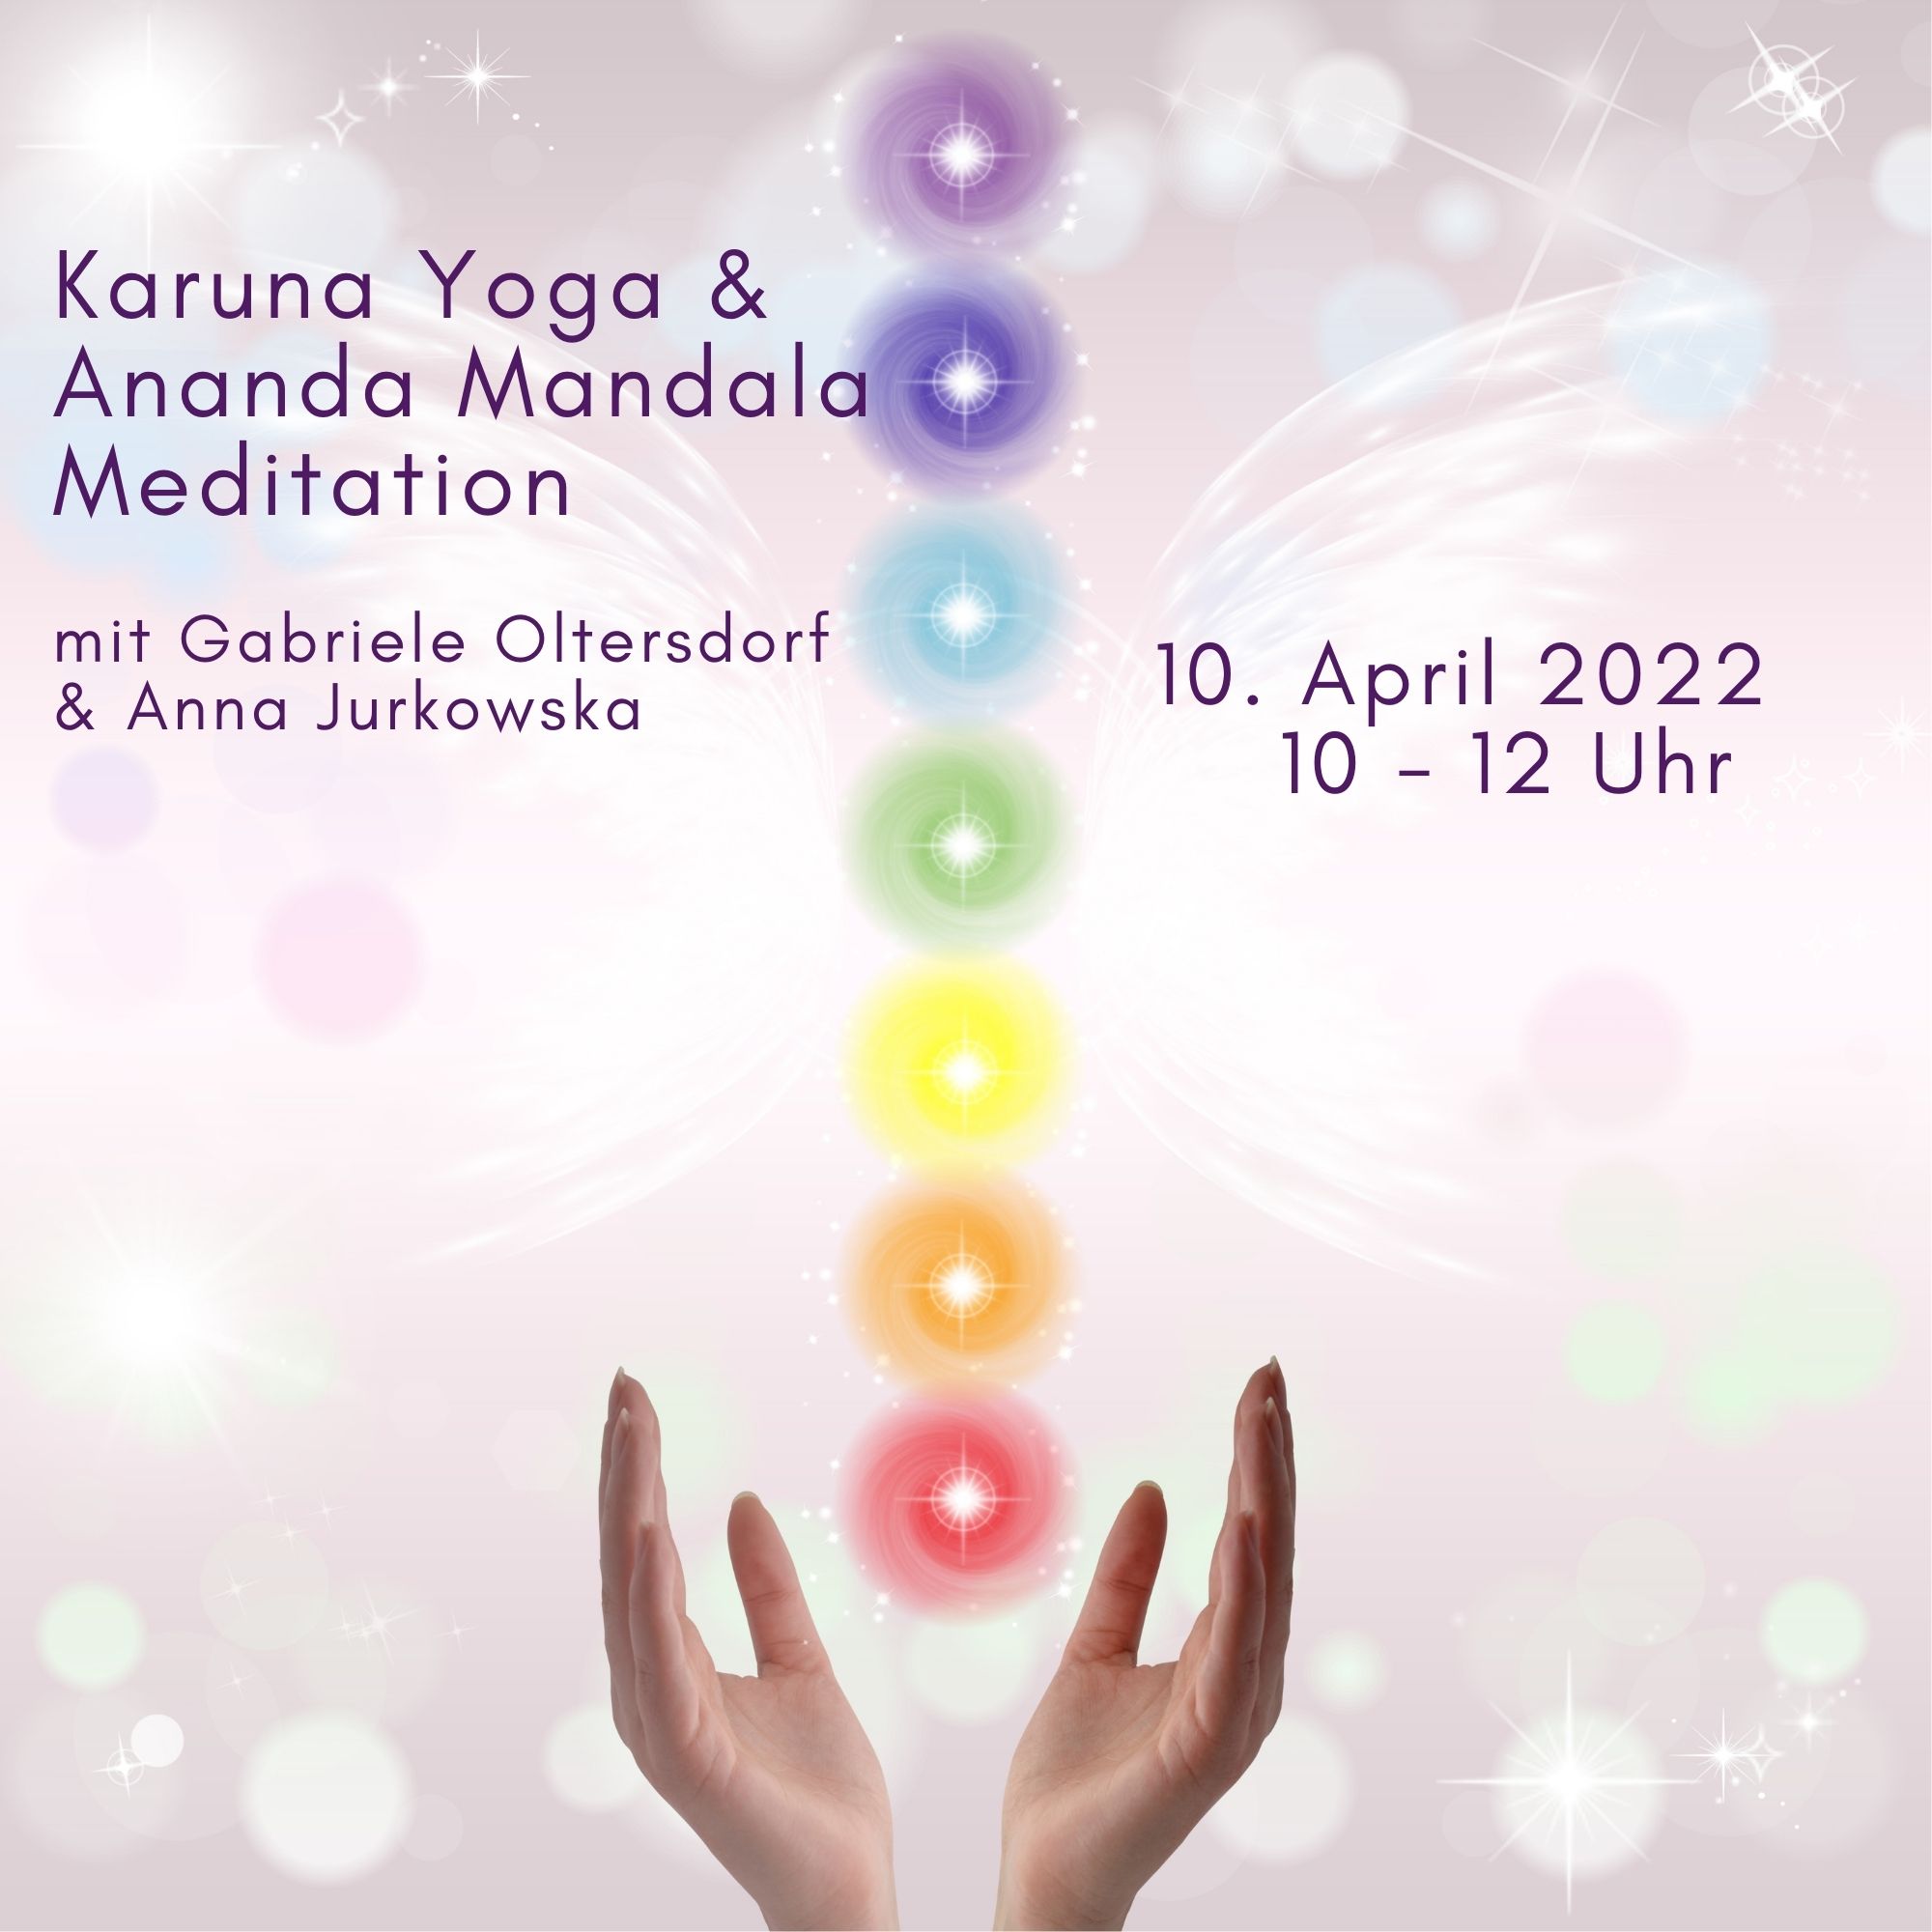 Sonntag 10. April: Karuna Yoga & Ananda Mandala Meditation